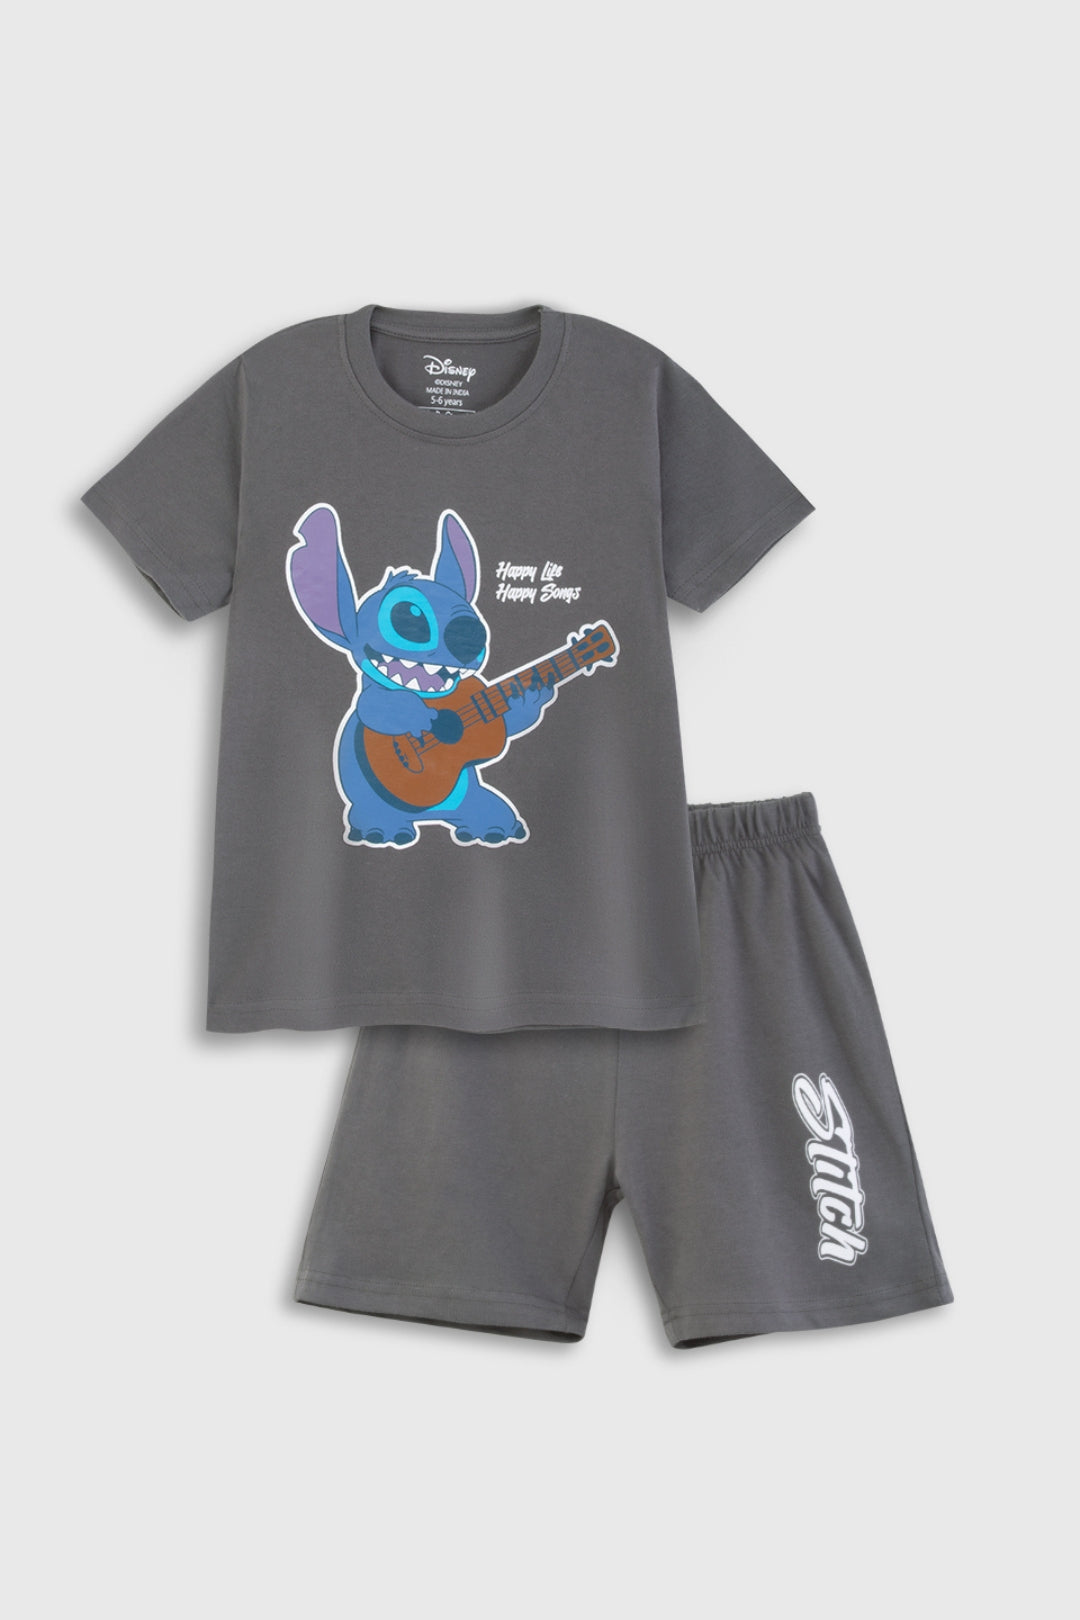 Lilo & Stitch Shorts set